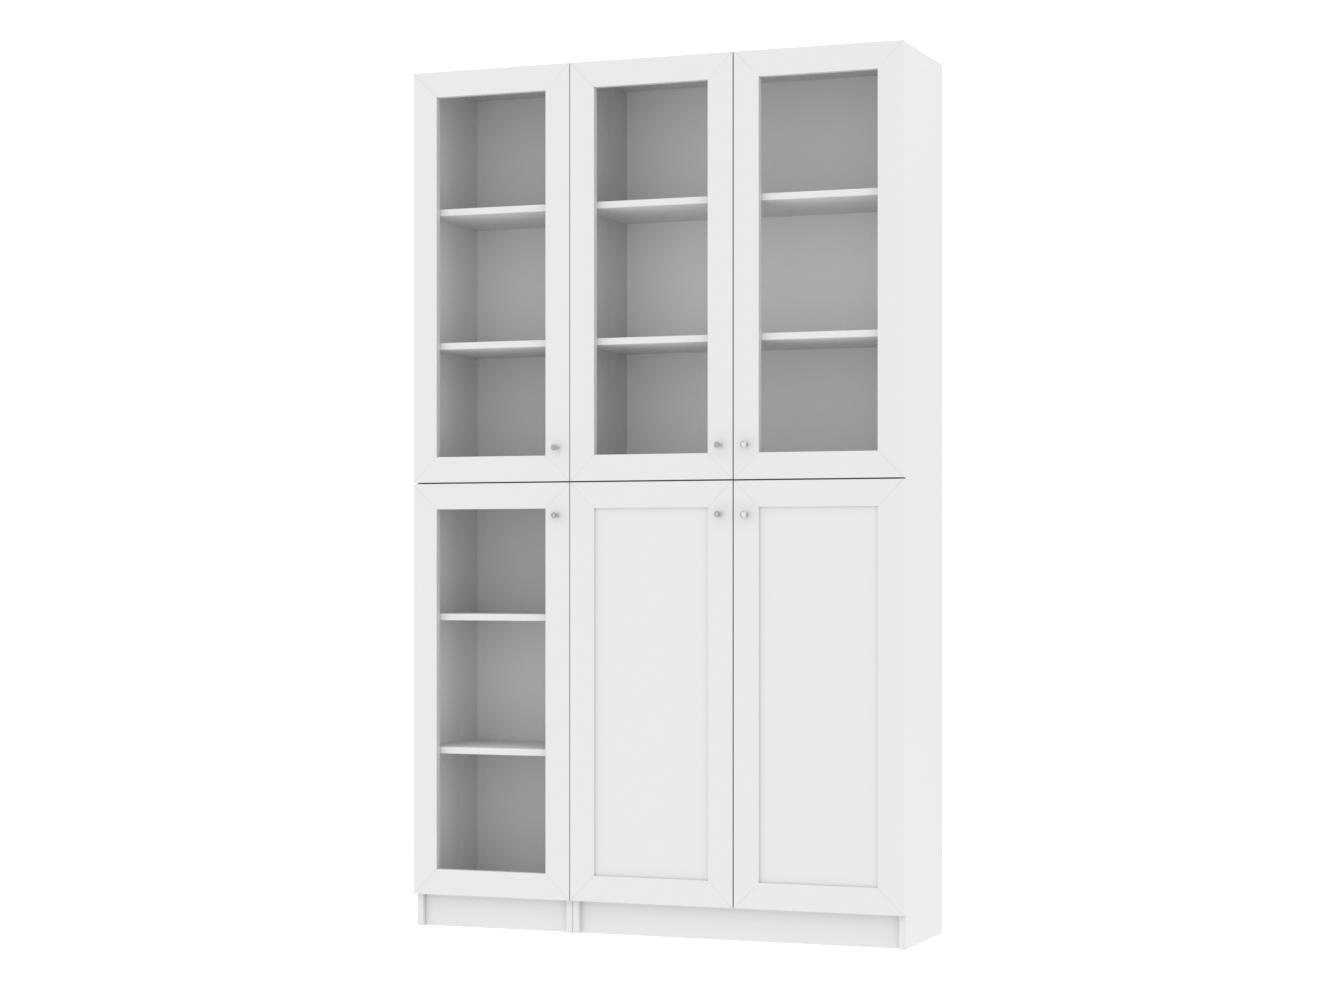 Изображение товара Книжный шкаф Билли 392 white desire ИКЕА (IKEA), 120x30x202 см на сайте adeta.ru